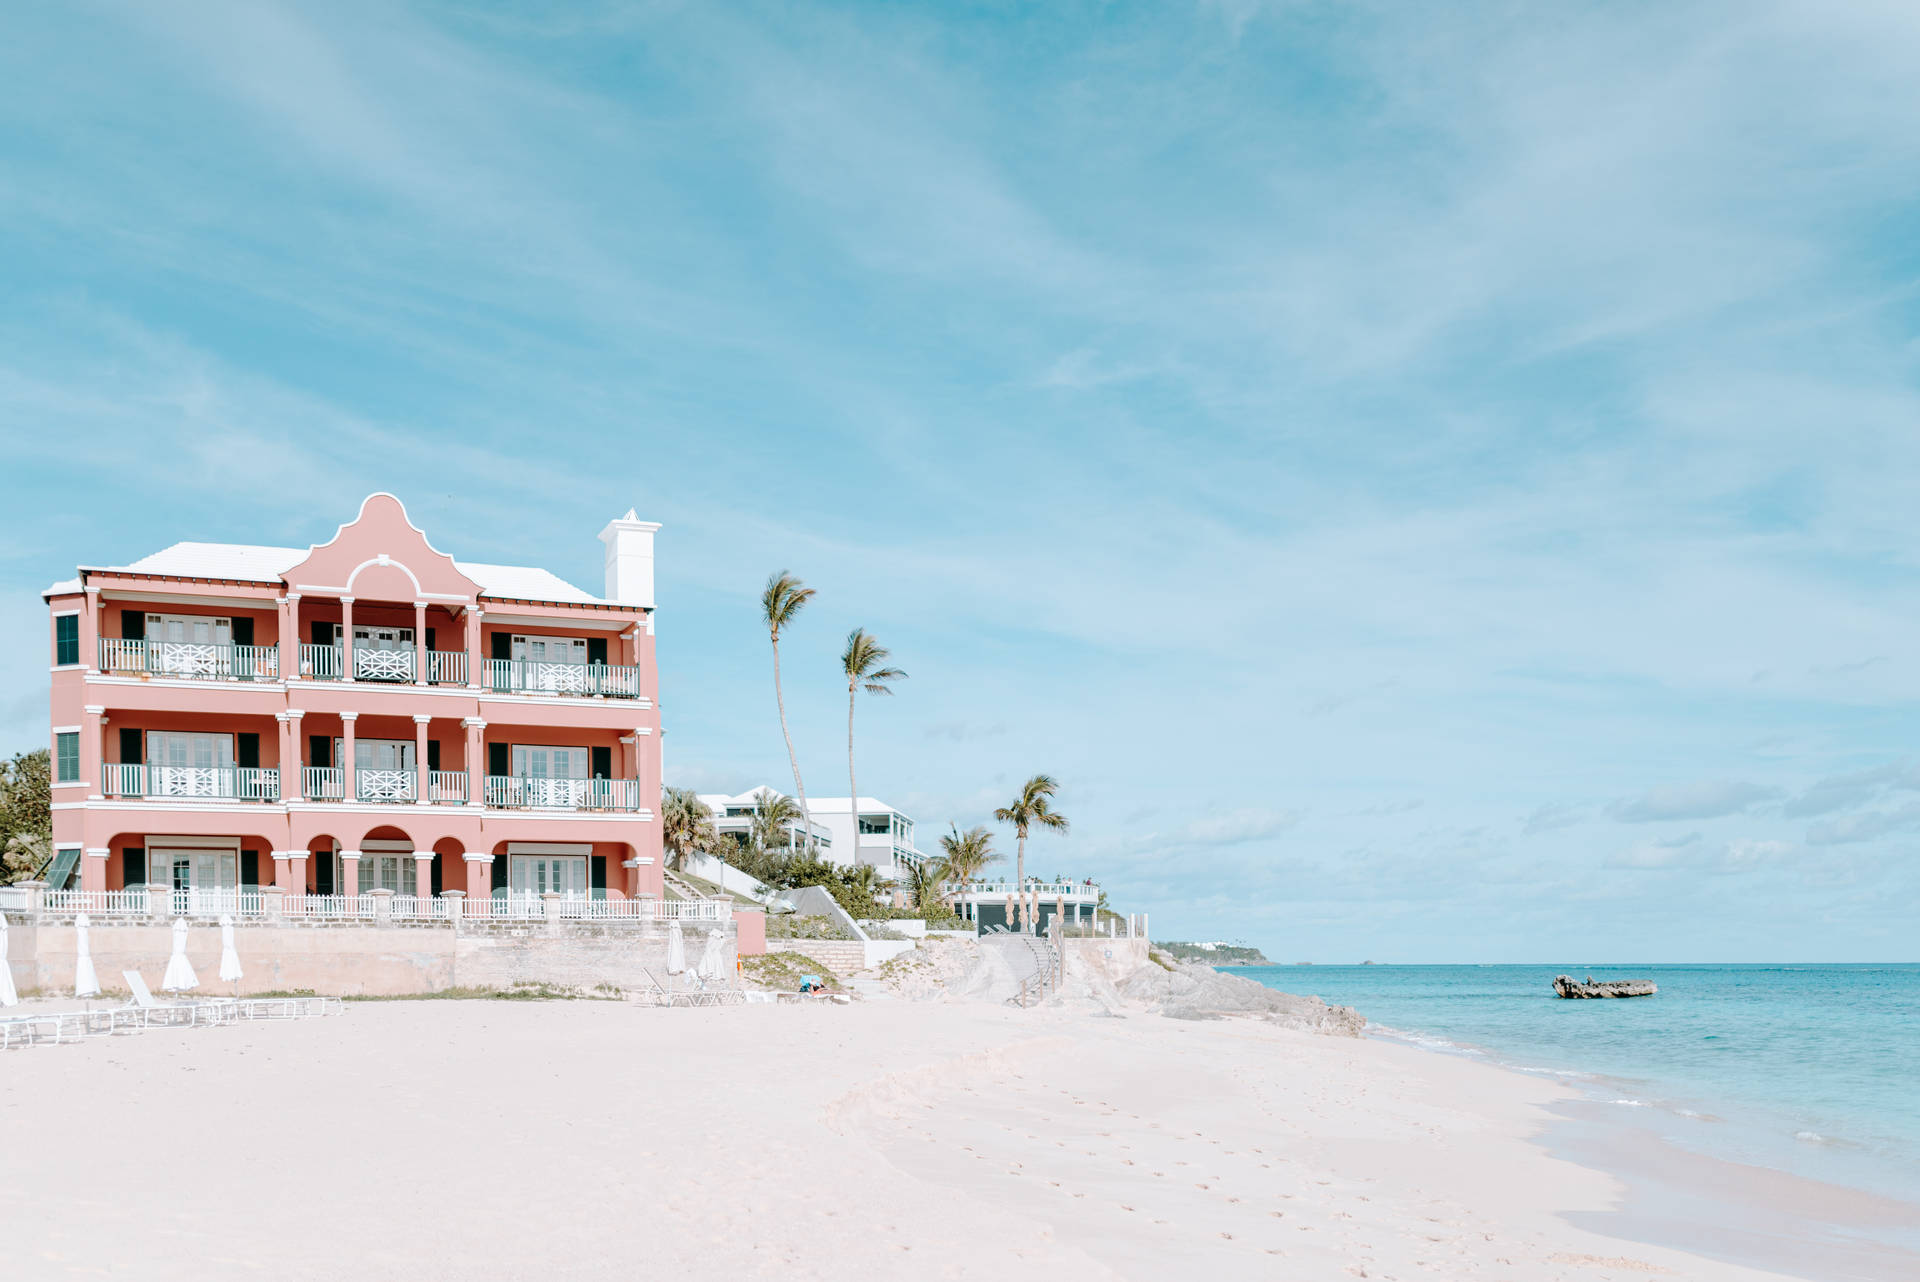 Bermuda Beach House: Lykkes at blive meget vellykket sammensat af klare farver Wallpaper